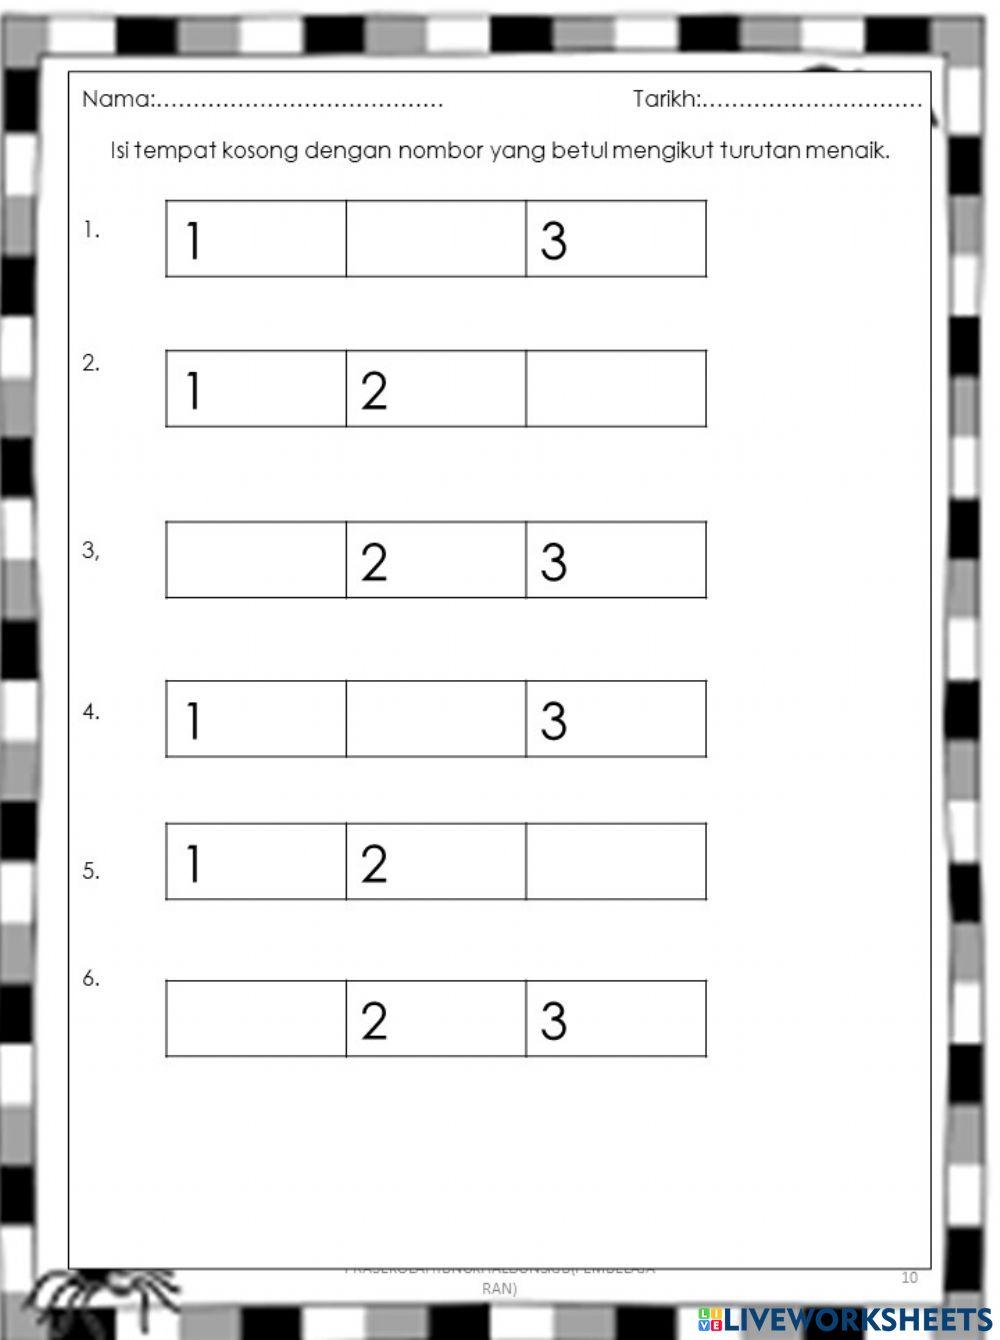 Menulis nombor mengikut turutan 1-3